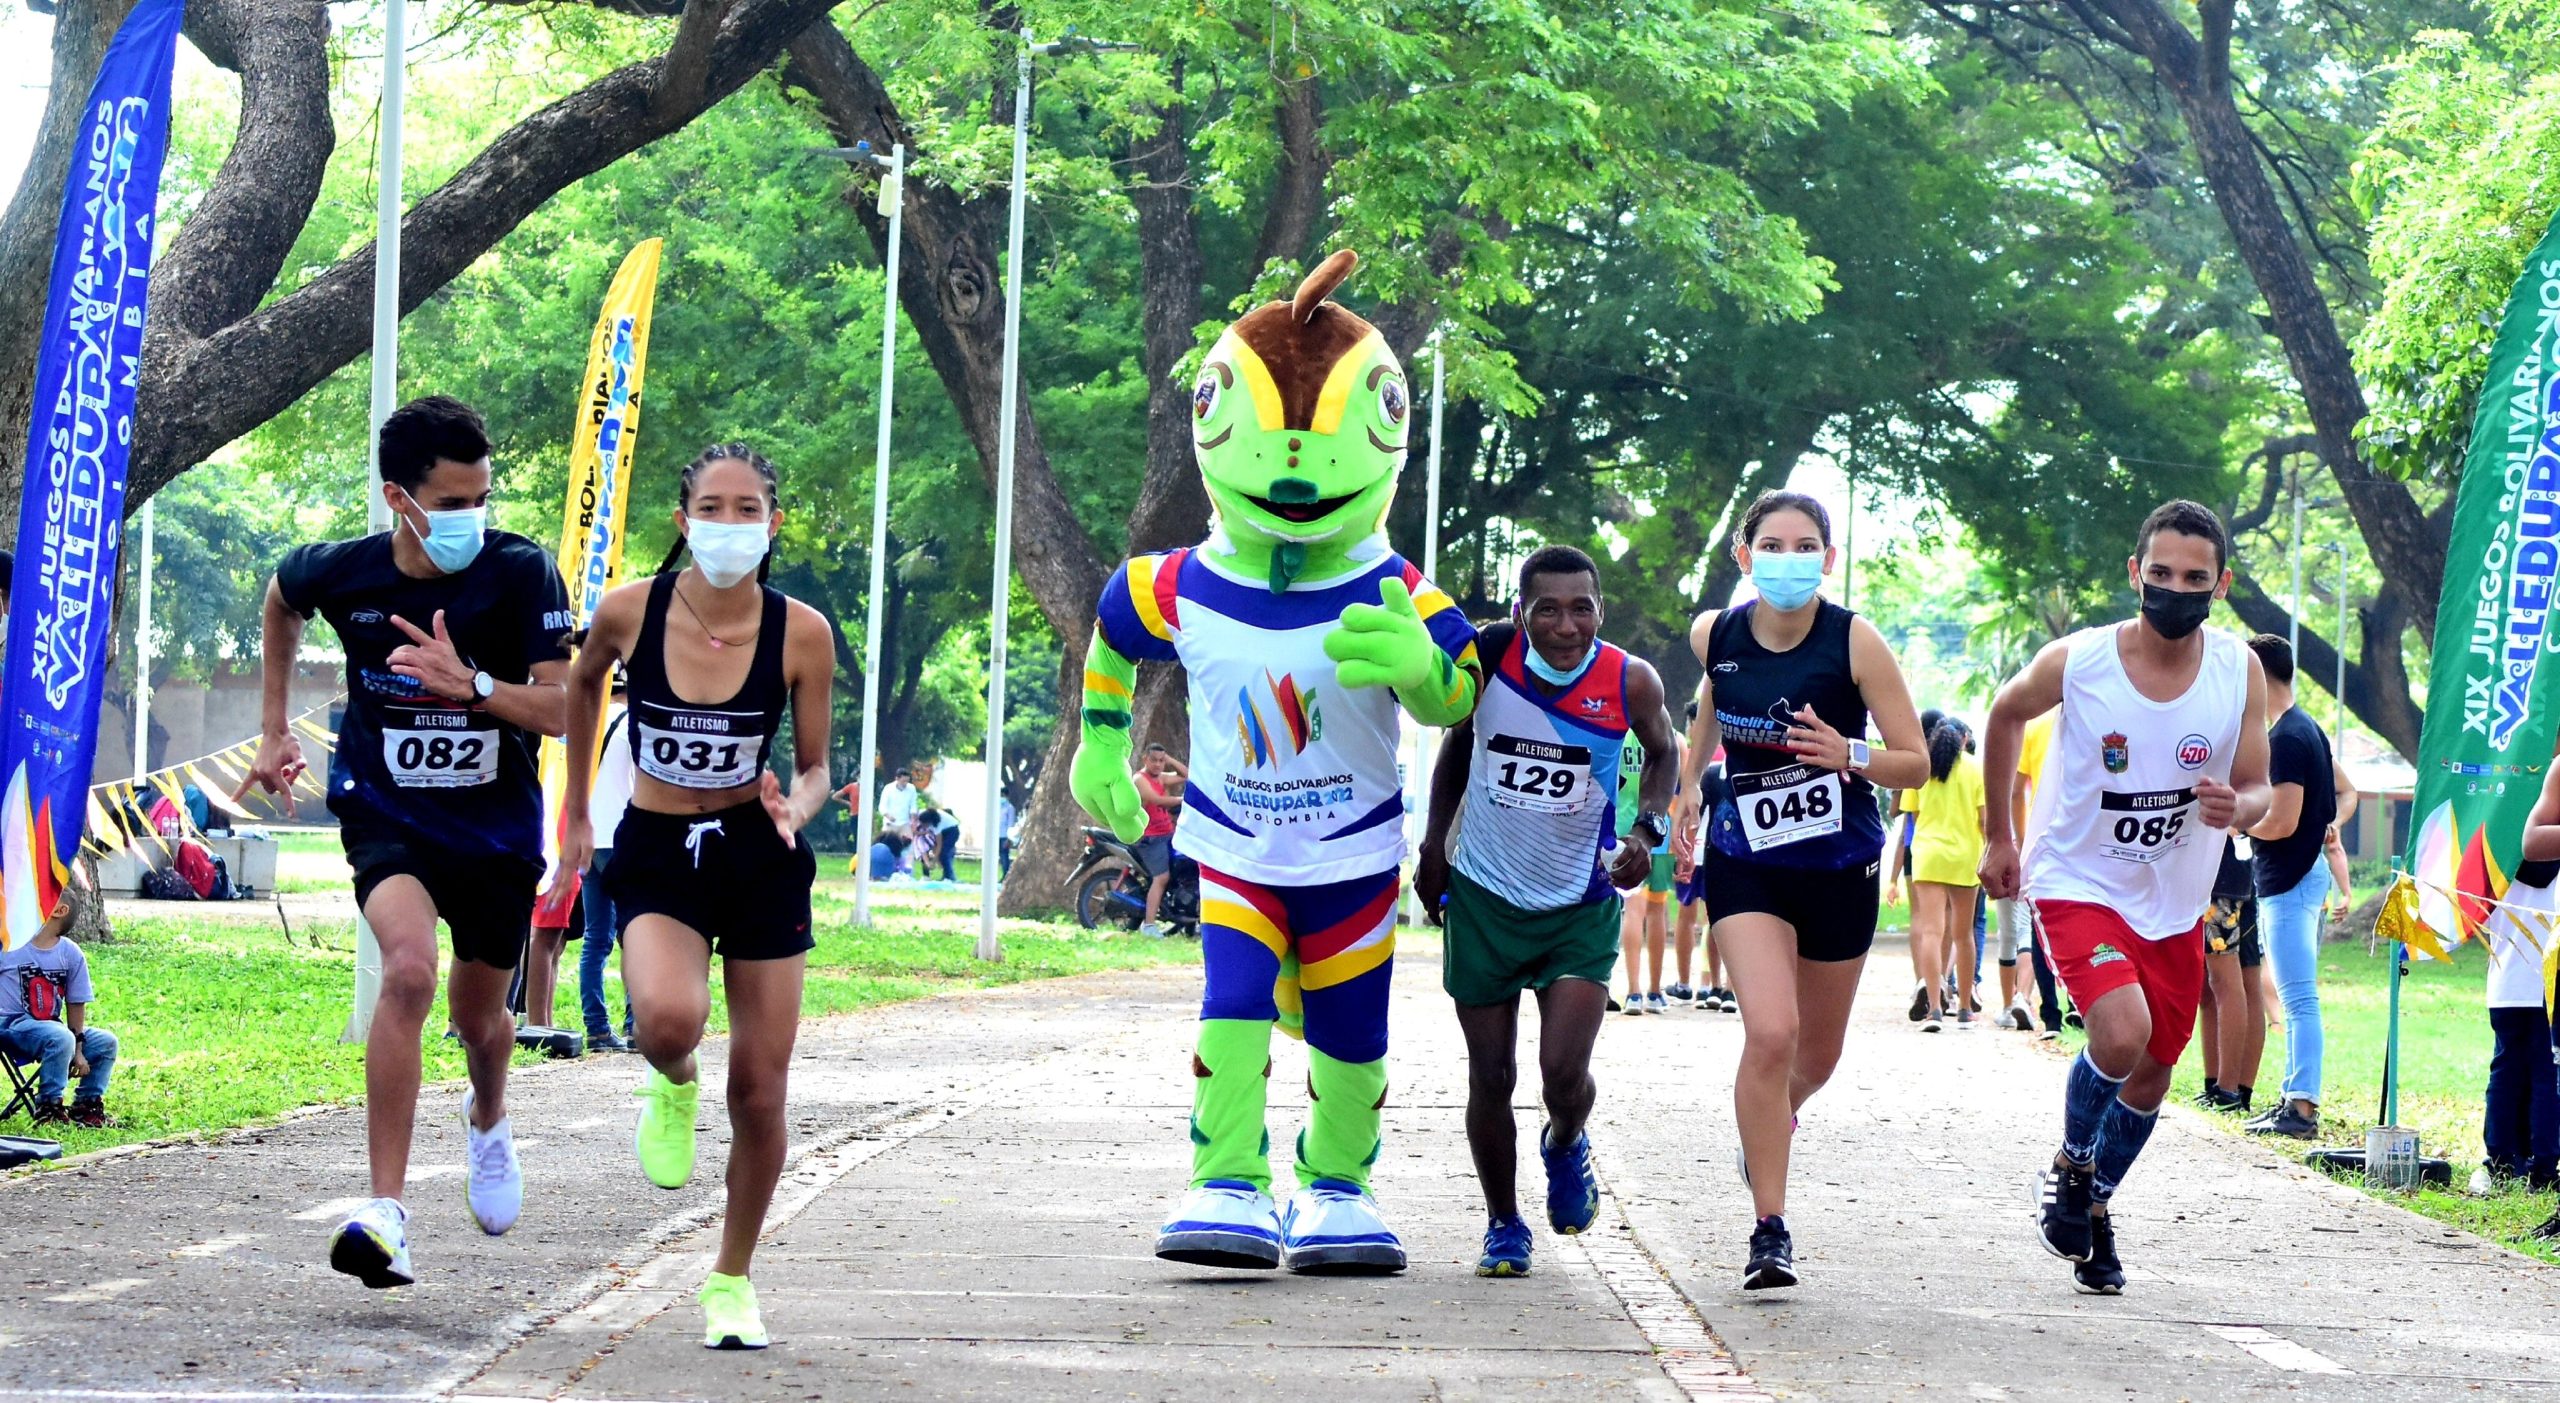 Cierres viales por media maratón de Atletismo en Juegos Bolivarianos Valledupar